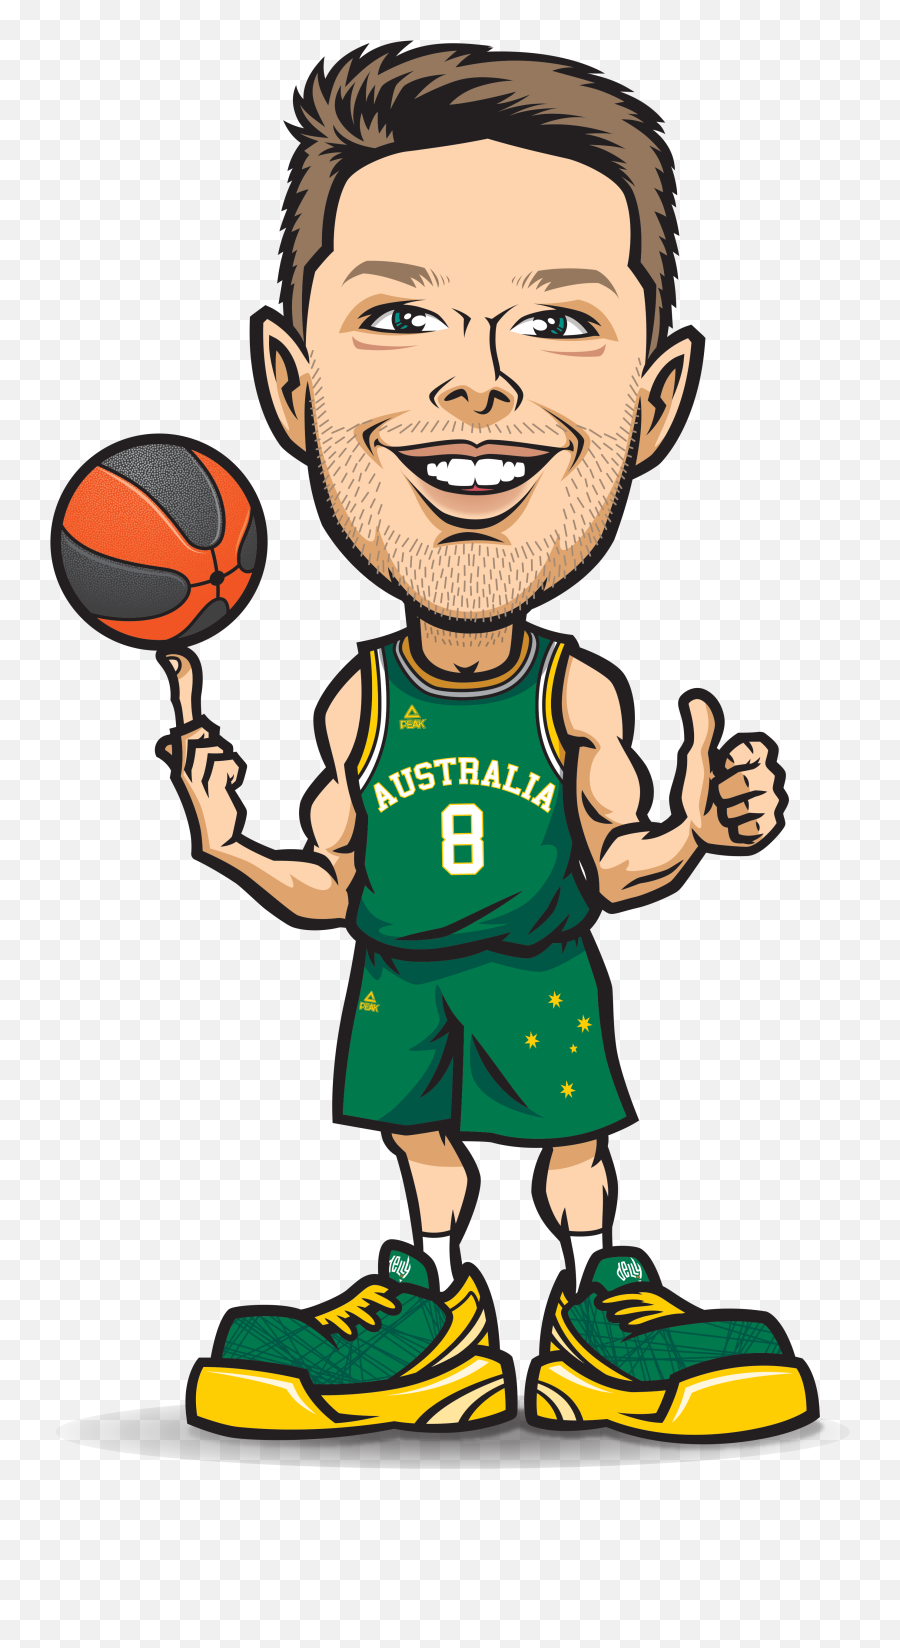 Aussie Hoops - Cartoon Basketball Player Caricature Emoji,Basketball Hoop Emoji